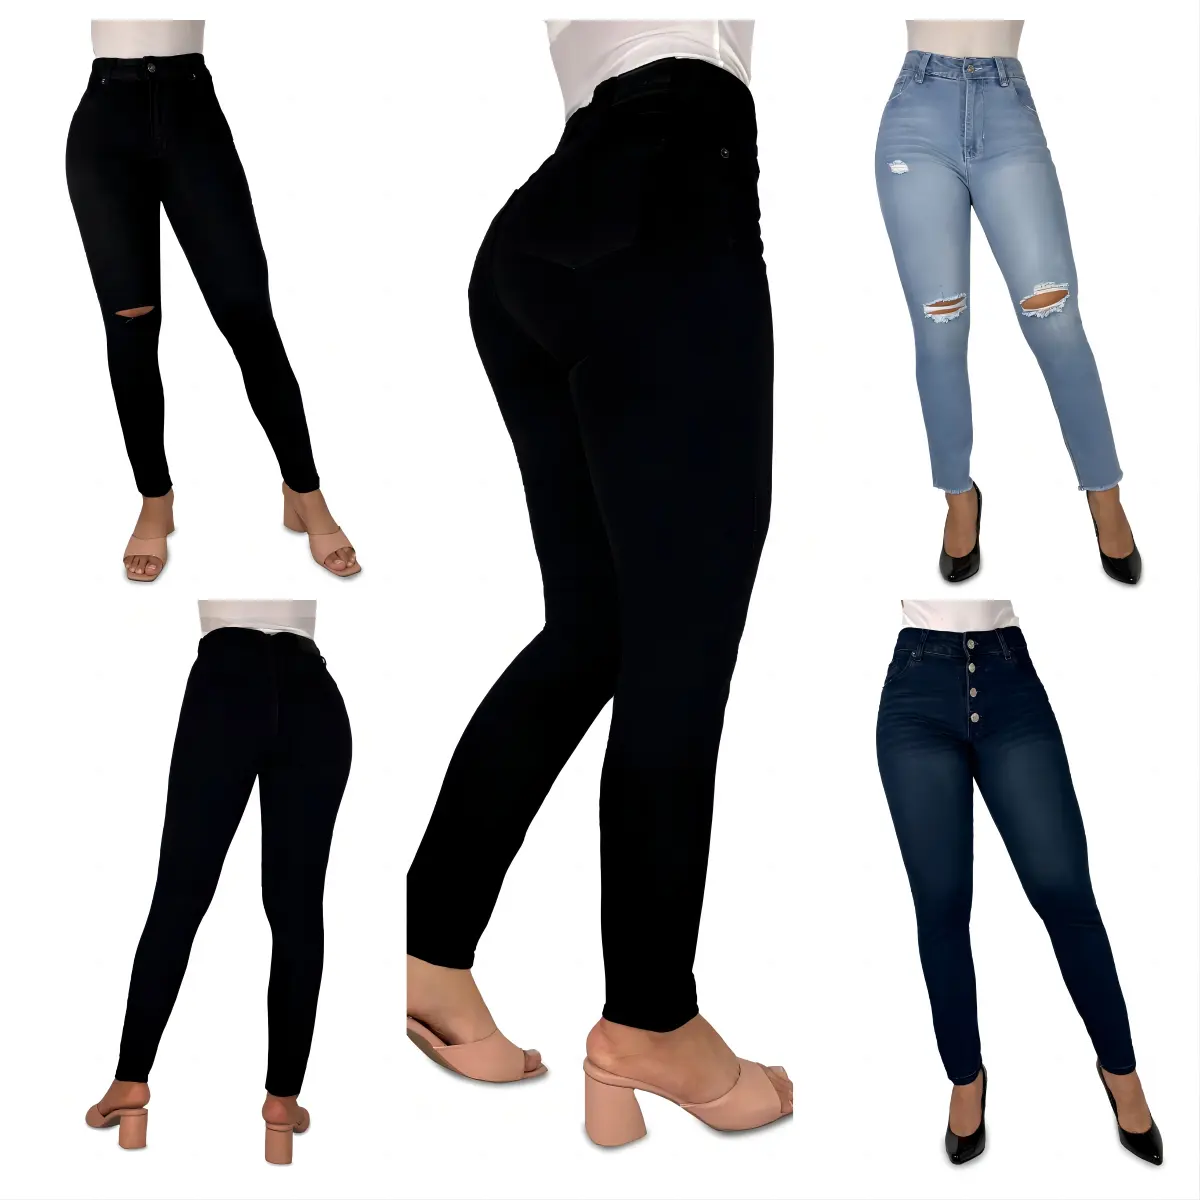 Jeans stretch denim und slimmer aussehen für damen Damen engere Jeans Slim fit Hosen Kolumbien sexy Bleistiftjeans